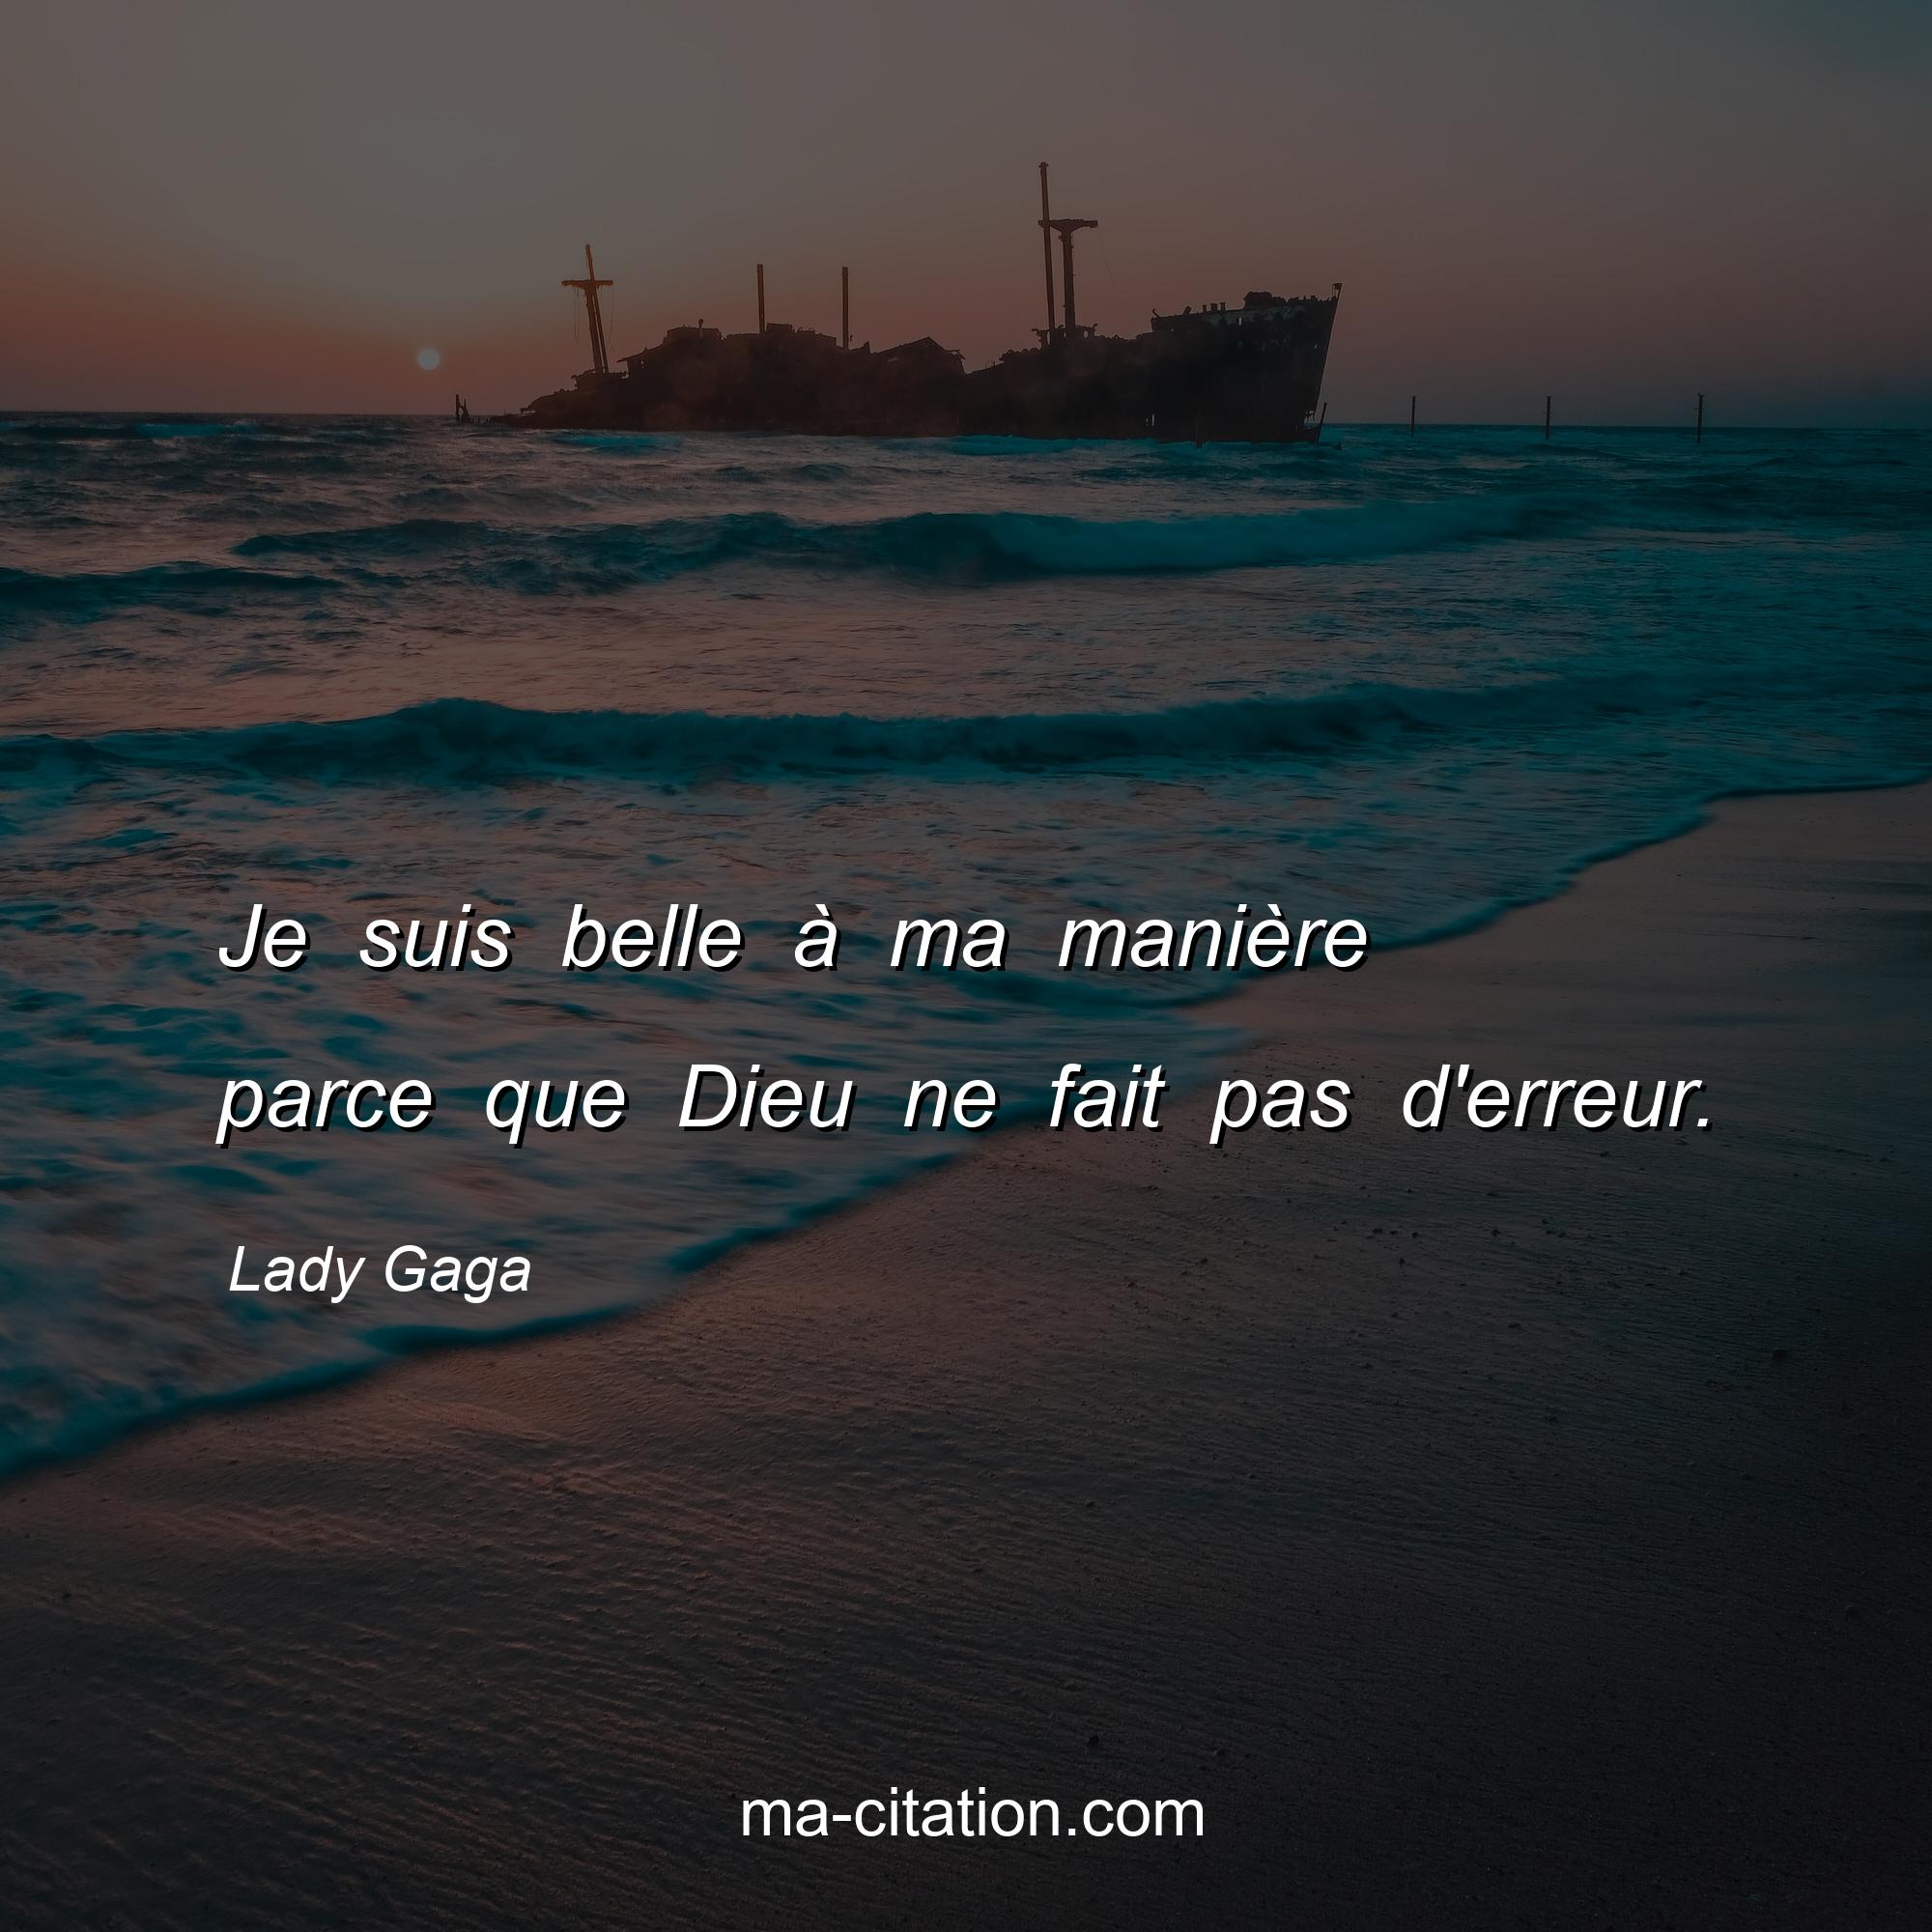 Lady Gaga : Je suis belle à ma manière parce que Dieu ne fait pas d'erreur.